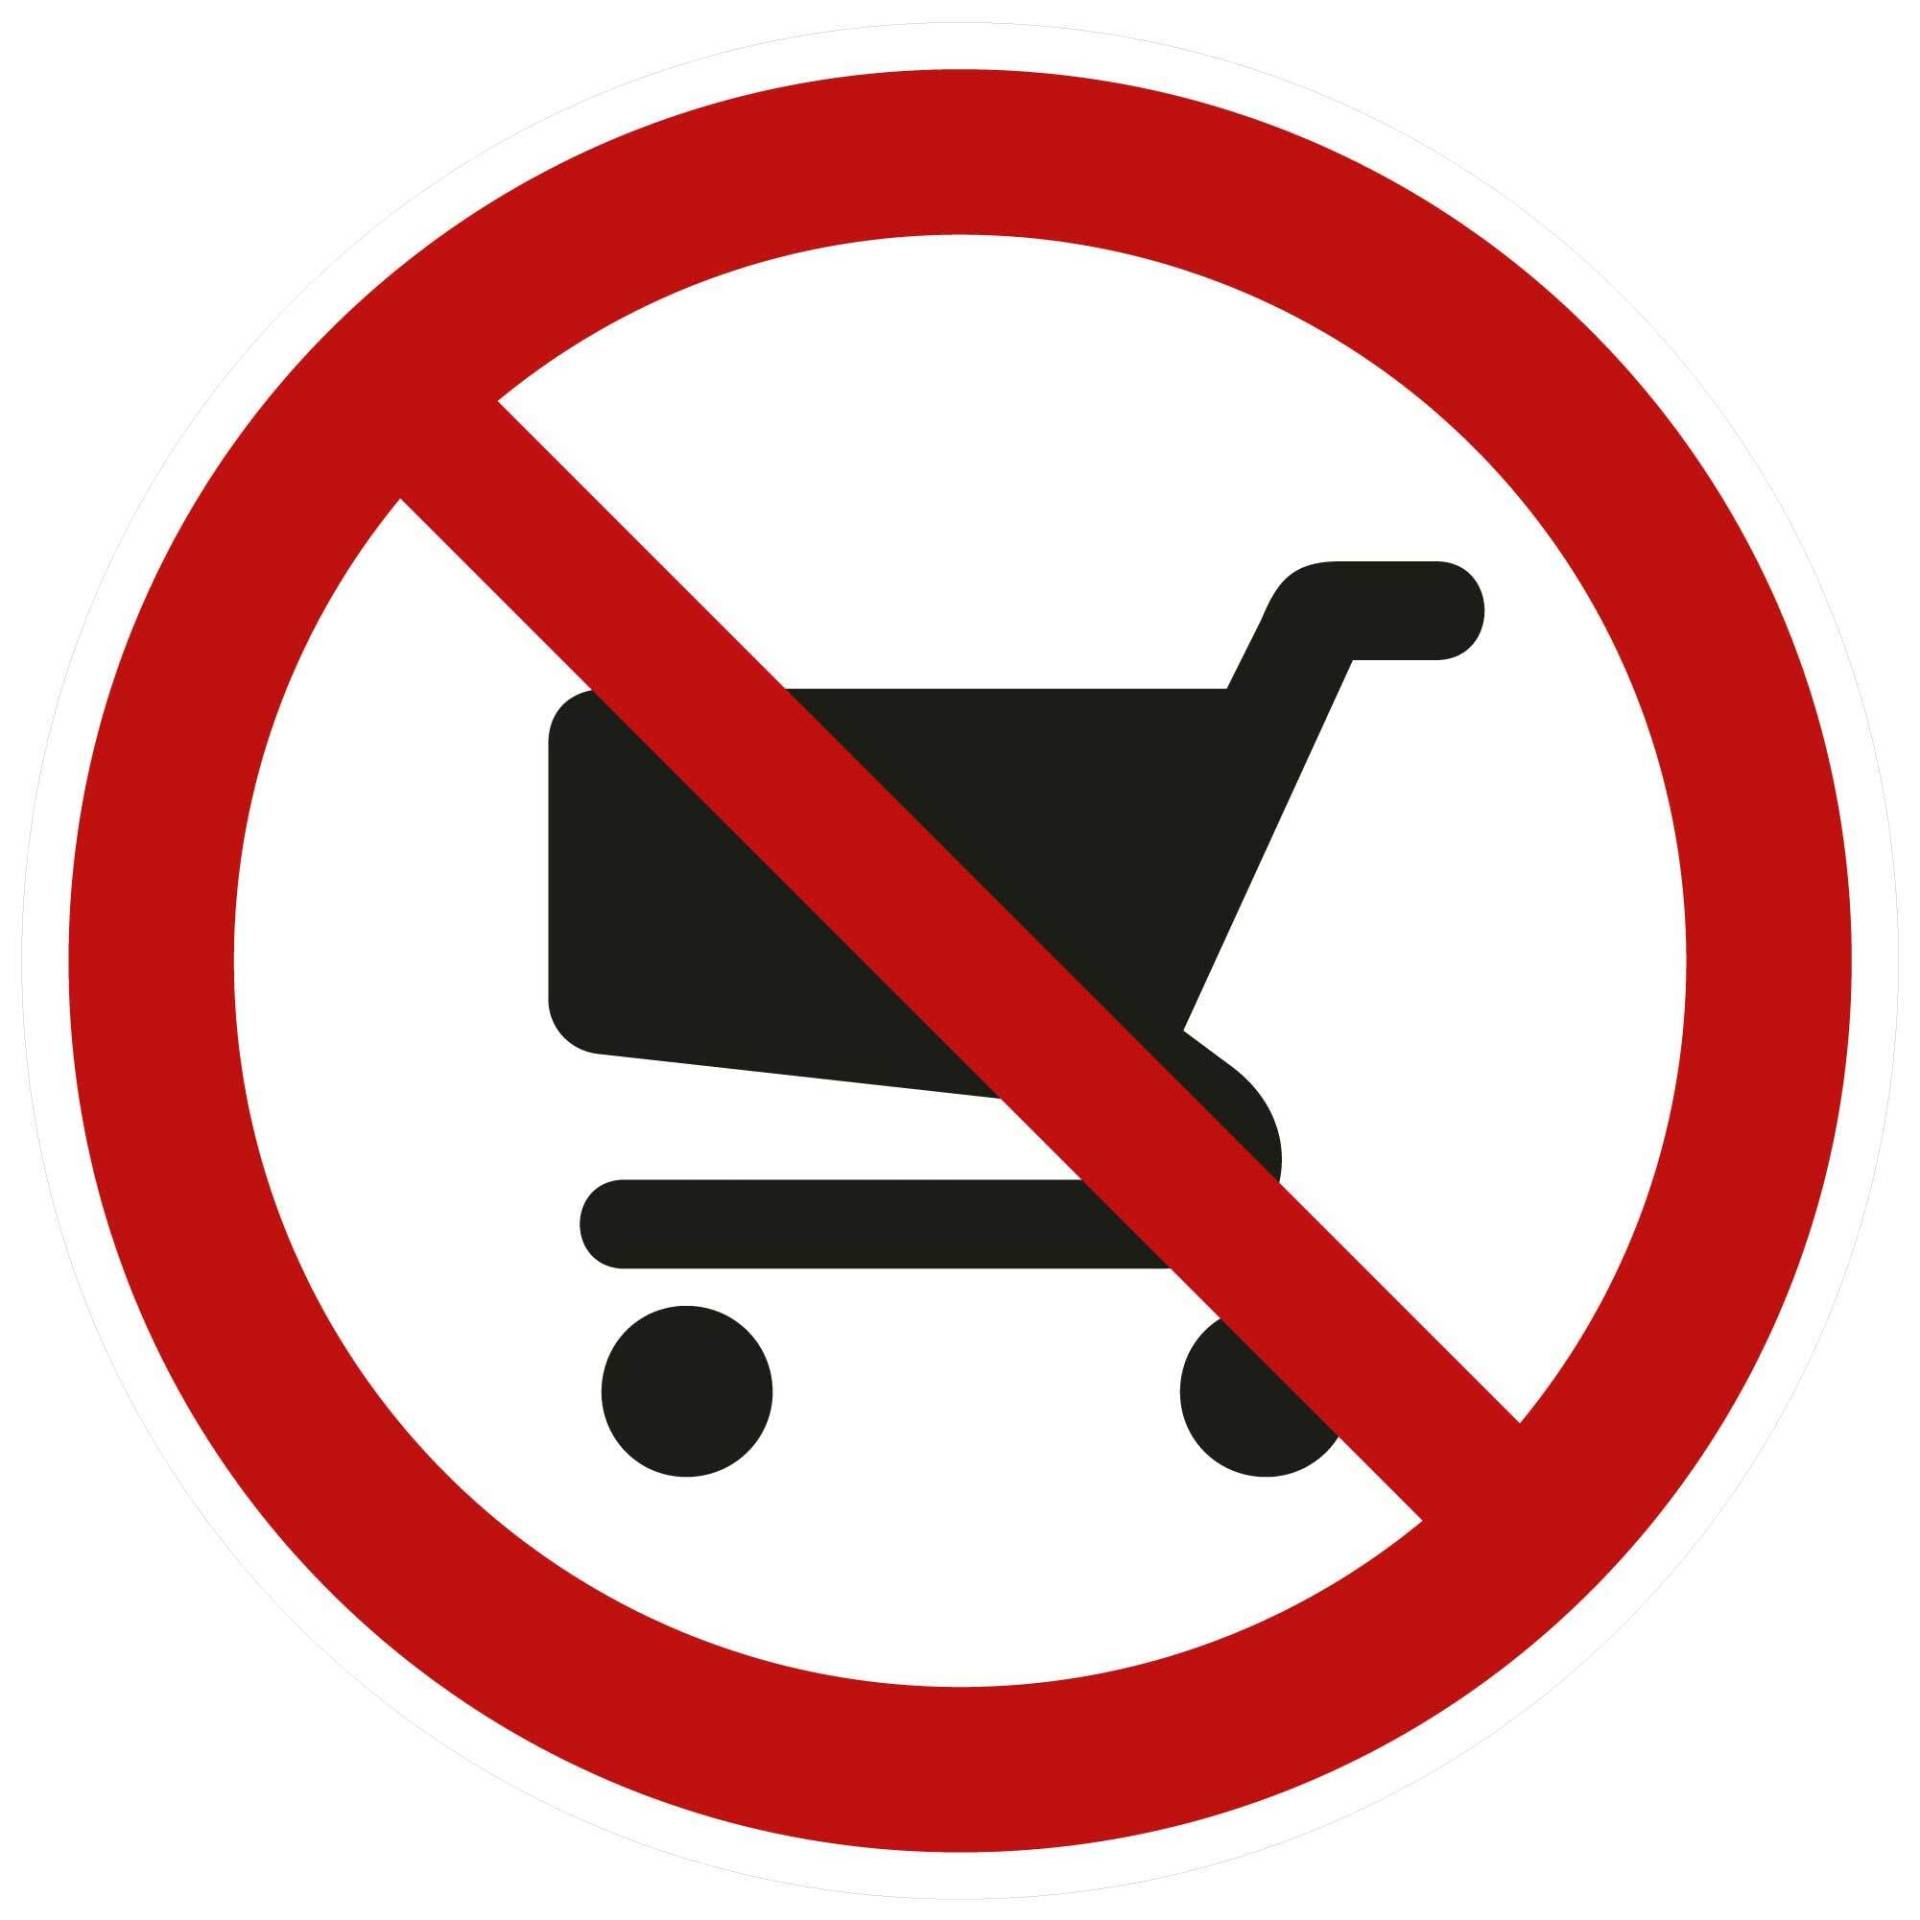 kleberio® Selbstklebende Aufkleber - Einkaufswagen verboten - Piktogramm kein Abstellen auf Park- und Freiflächen, Keine Mitnahme in Verkaufsräume, Sicherheits - Aufkleber 20 cm 5 Stück von kleberio